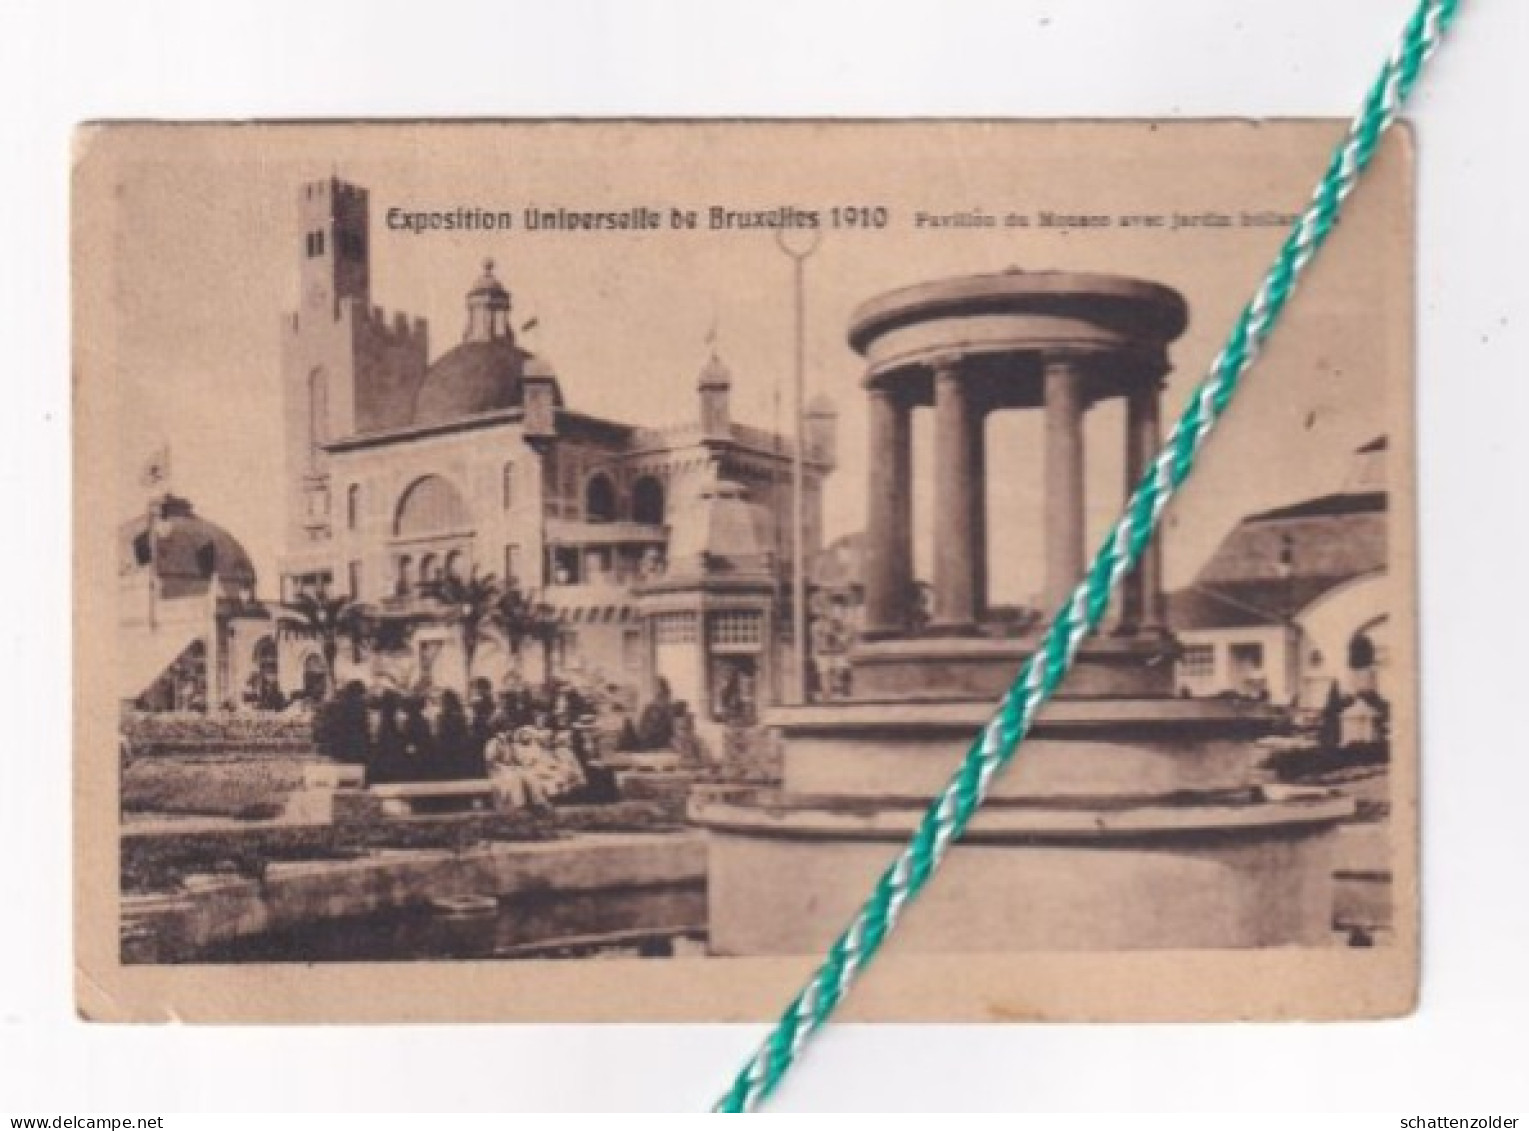 Exposition Universelle De Bruxelles, Brussel, 1910. Pavillon Du Monaco Avec Jardin Hollandais - Exposiciones Universales